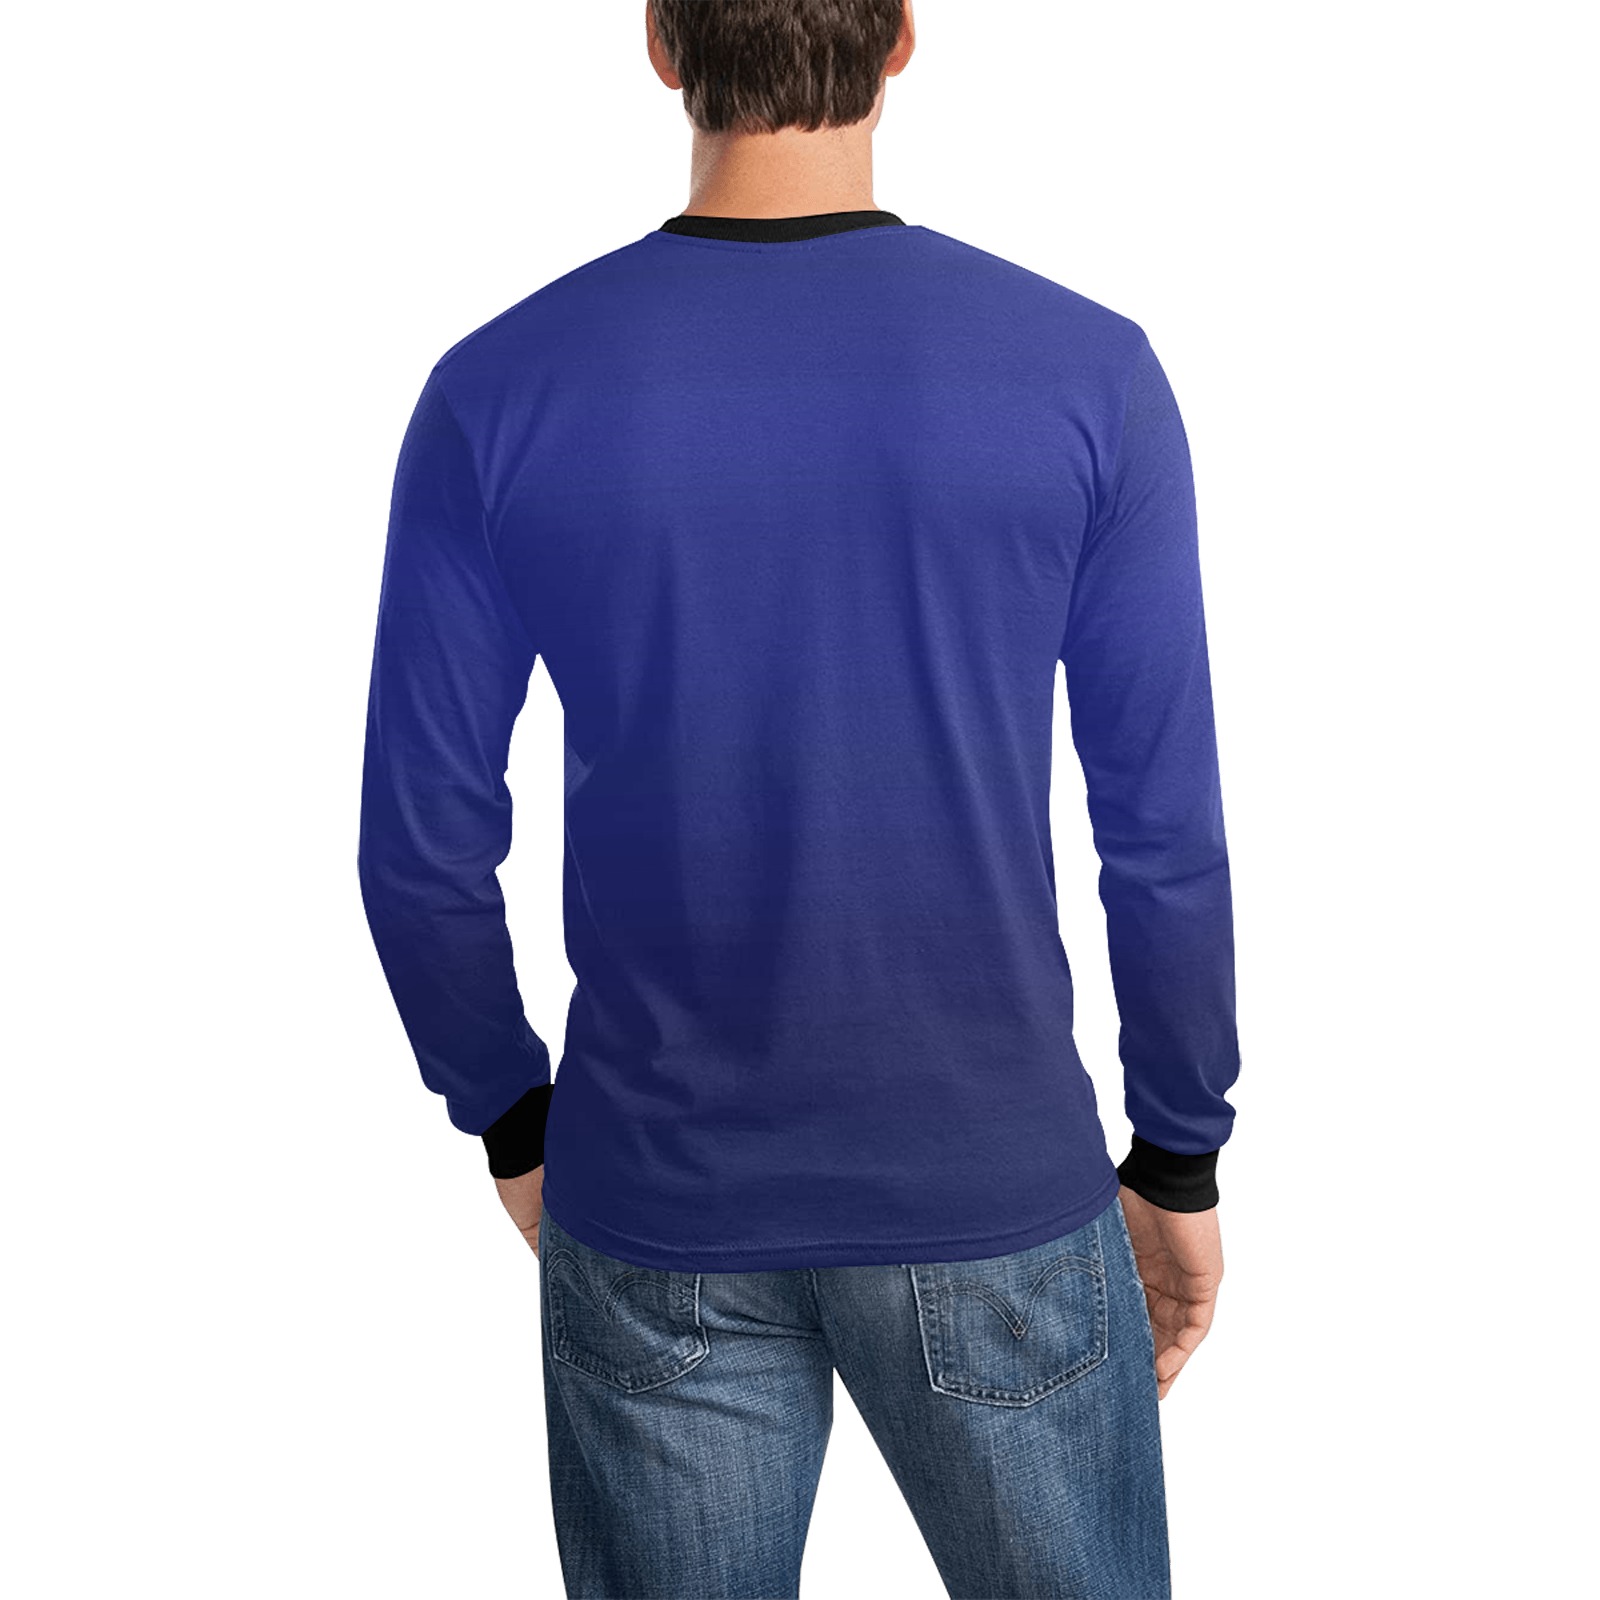 blu e Men's All Over Print Long Sleeve T-shirt (Model T51)